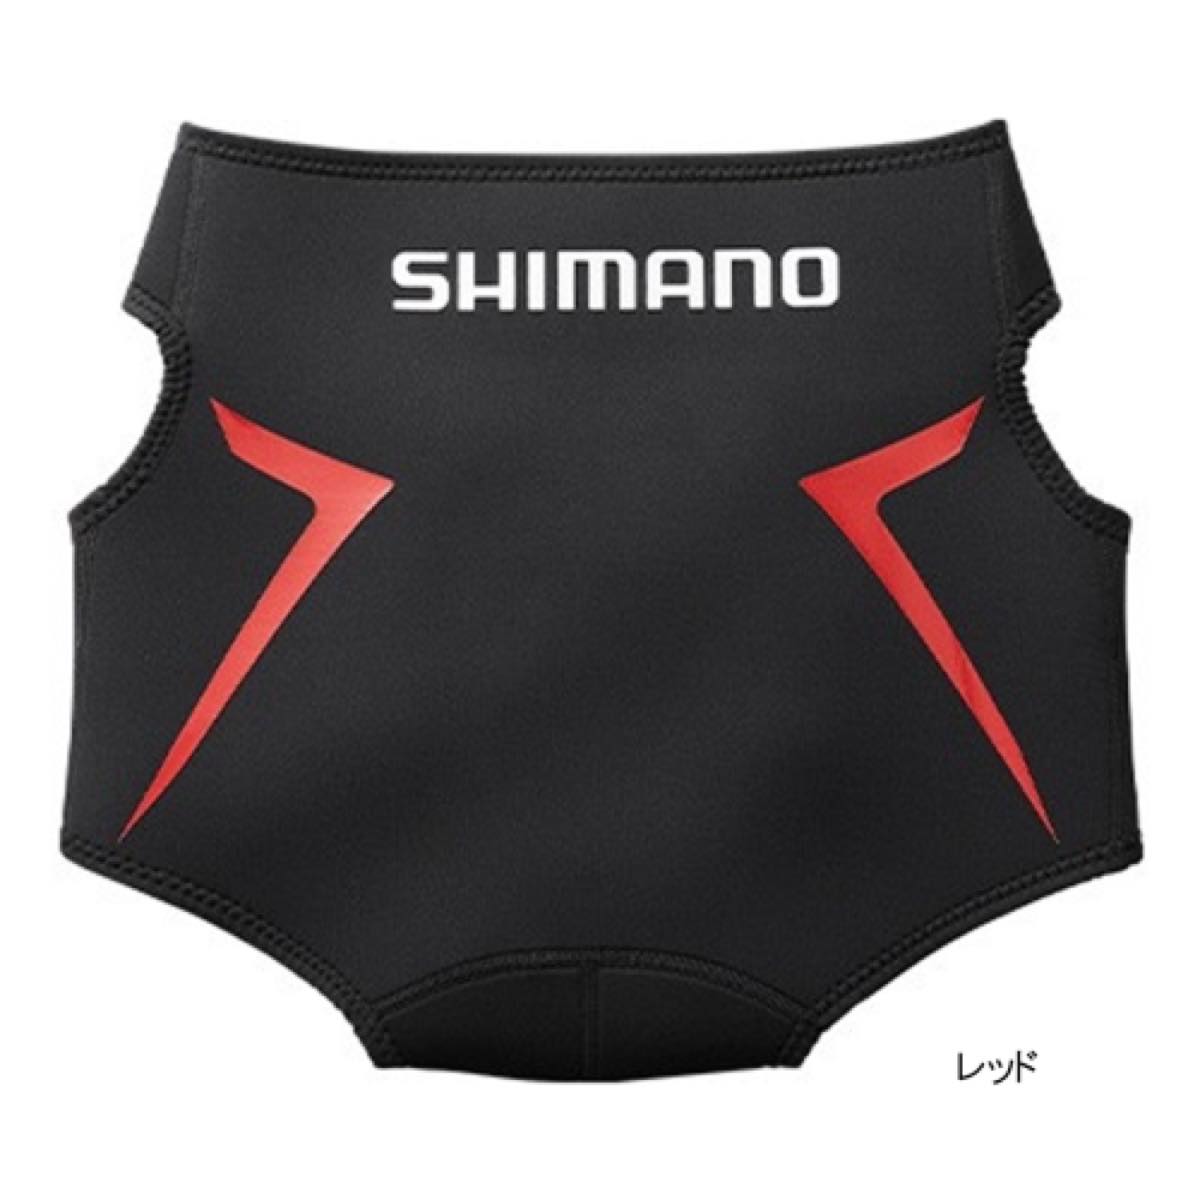 シマノ(SHIMANO) ヒップガード GU-011S L レッド